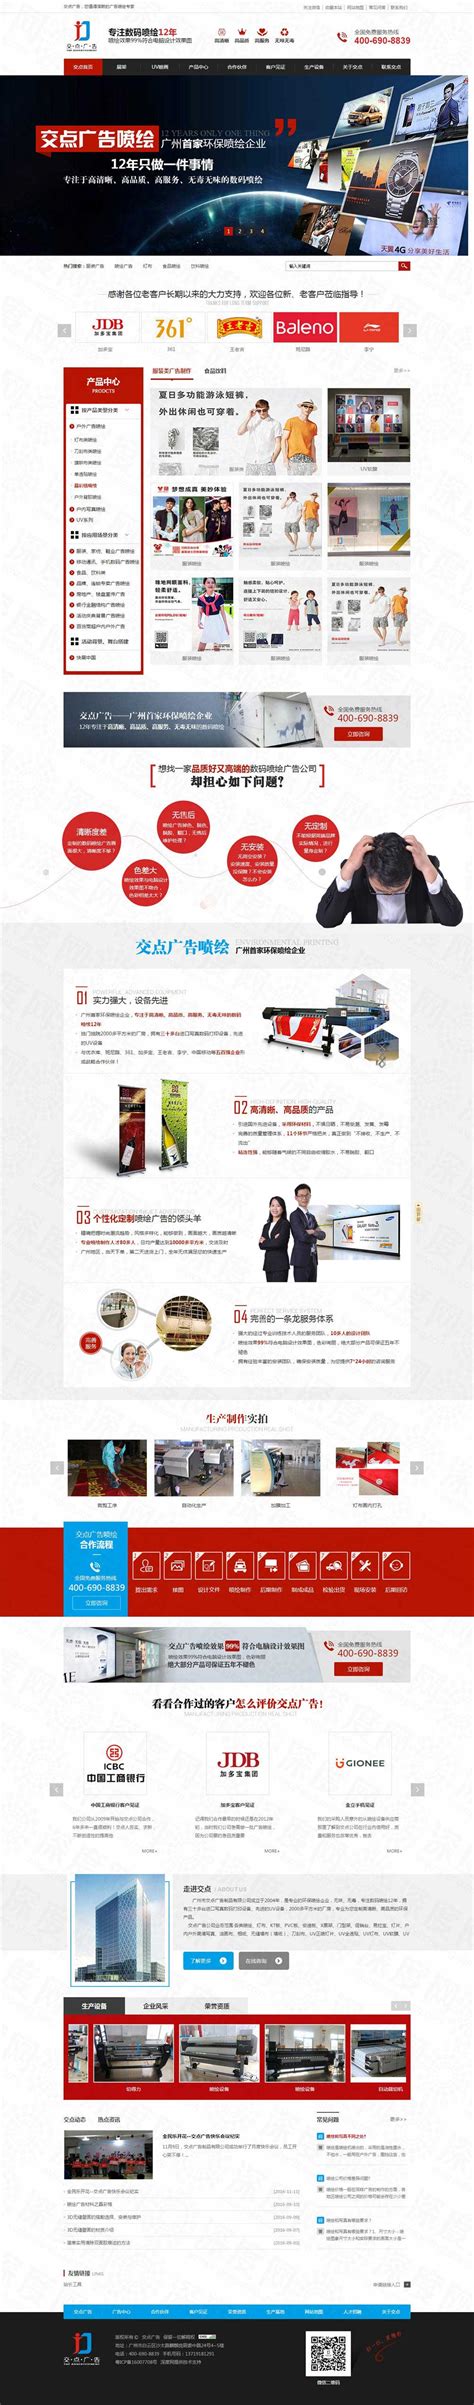 广州市交点广告制品营销型网站建设案例|印刷/包装/广告|深度网